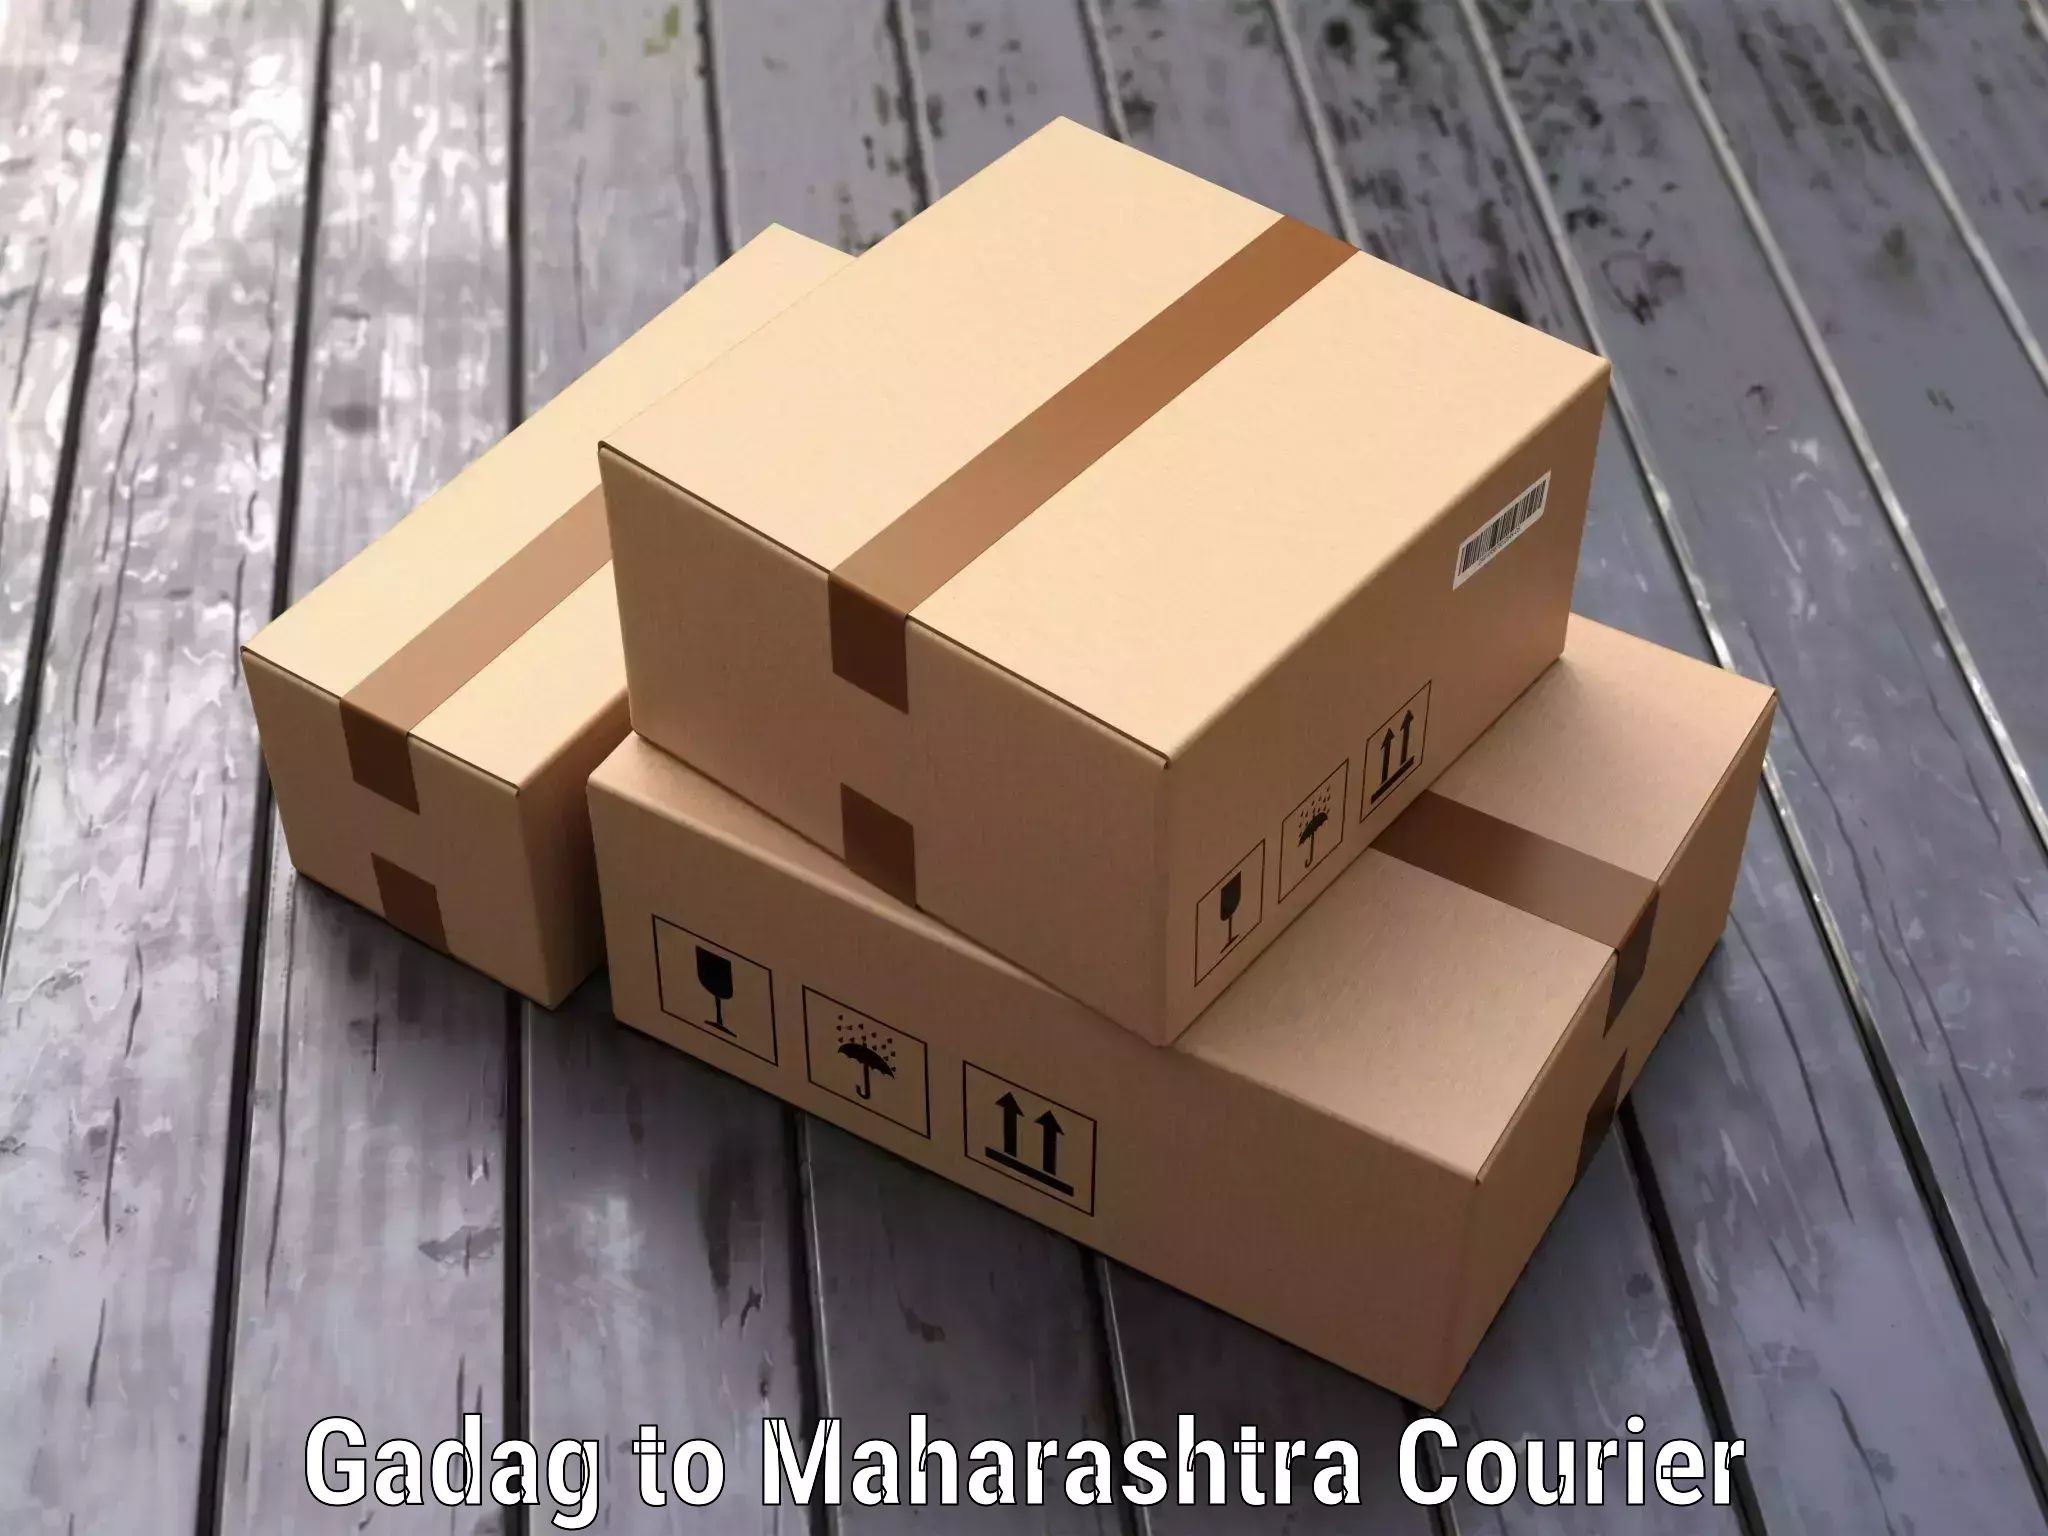 Baggage shipping experts Gadag to Maharashtra